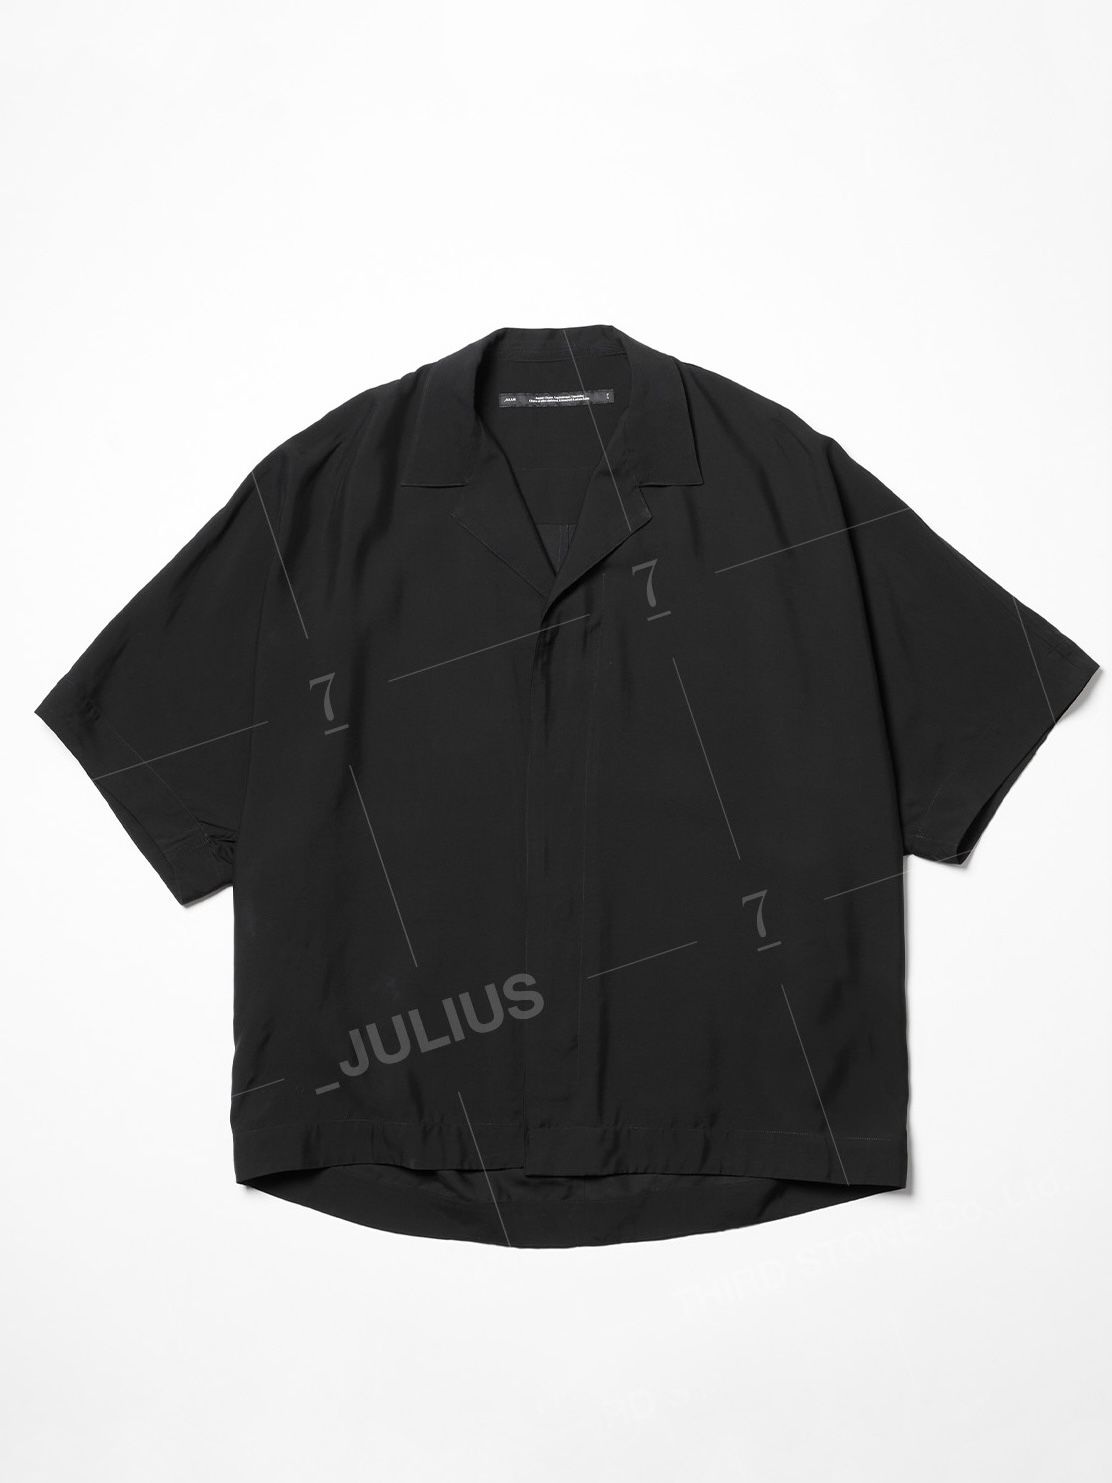 堅実な究極の シャツ 日本製 セブンユリウス 1 JULIUS _7 メンズ 黒 